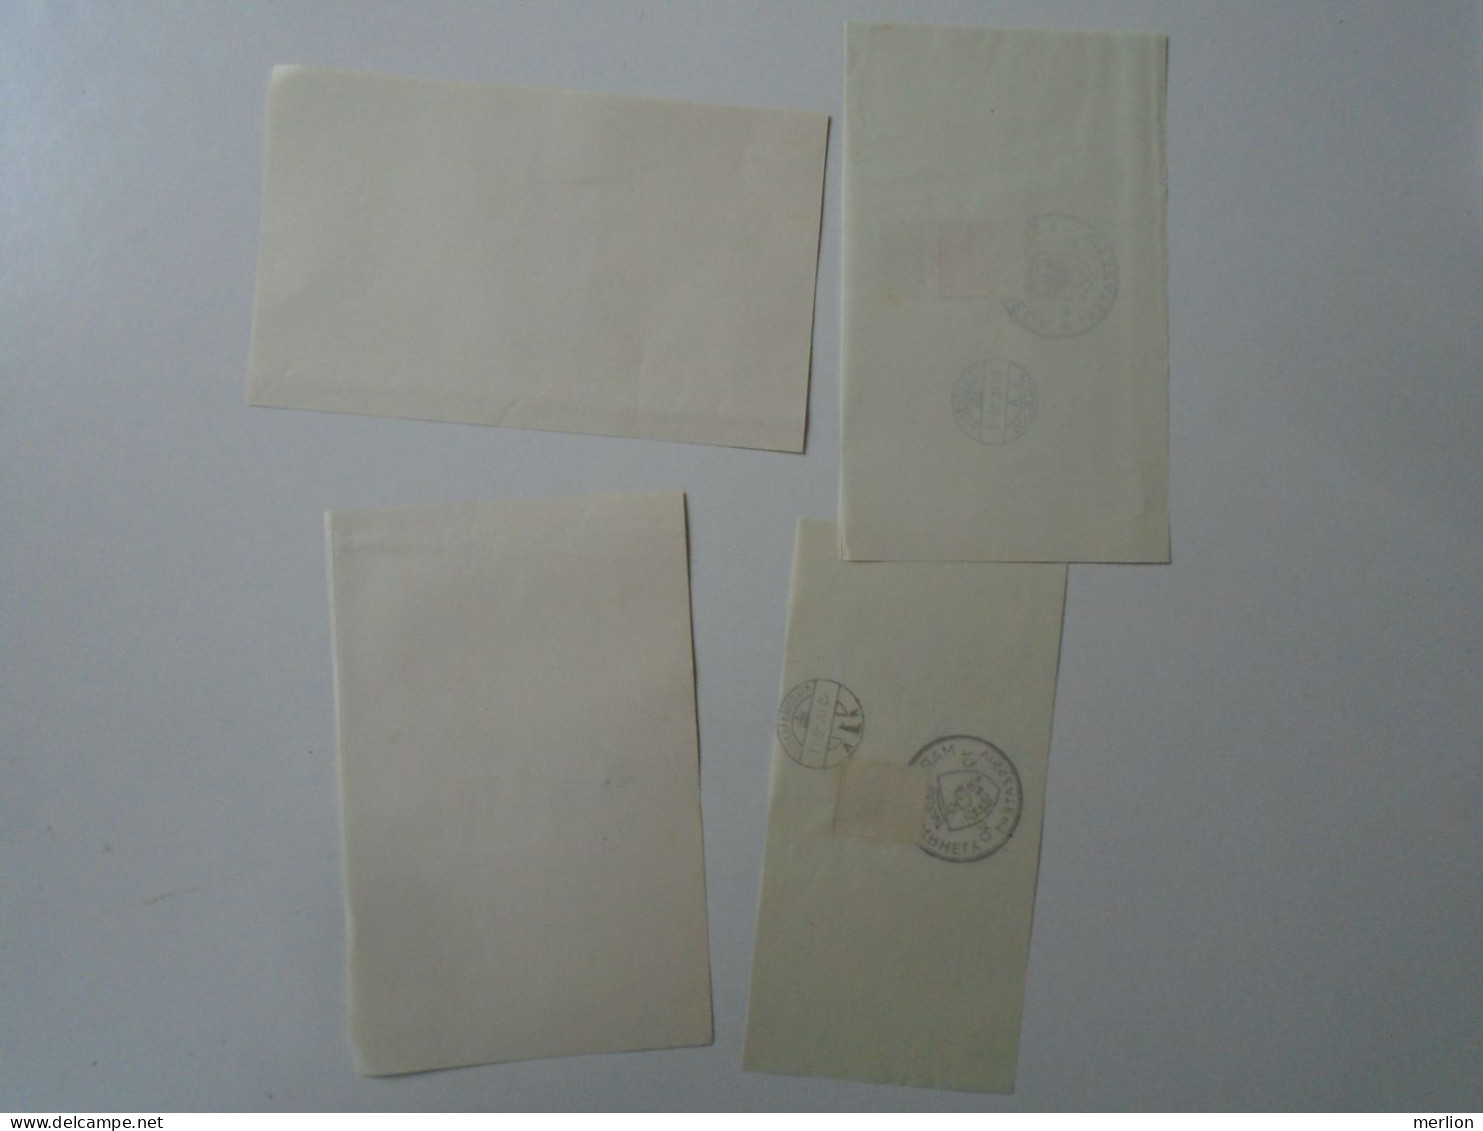 ZA451.23 Hungary-Gyergyószenmiklós,Csíkszereda, Marosvásárhely, Sepsiszentgyörgy Visszatért -Commemorative Postmark 1940 - Storia Postale